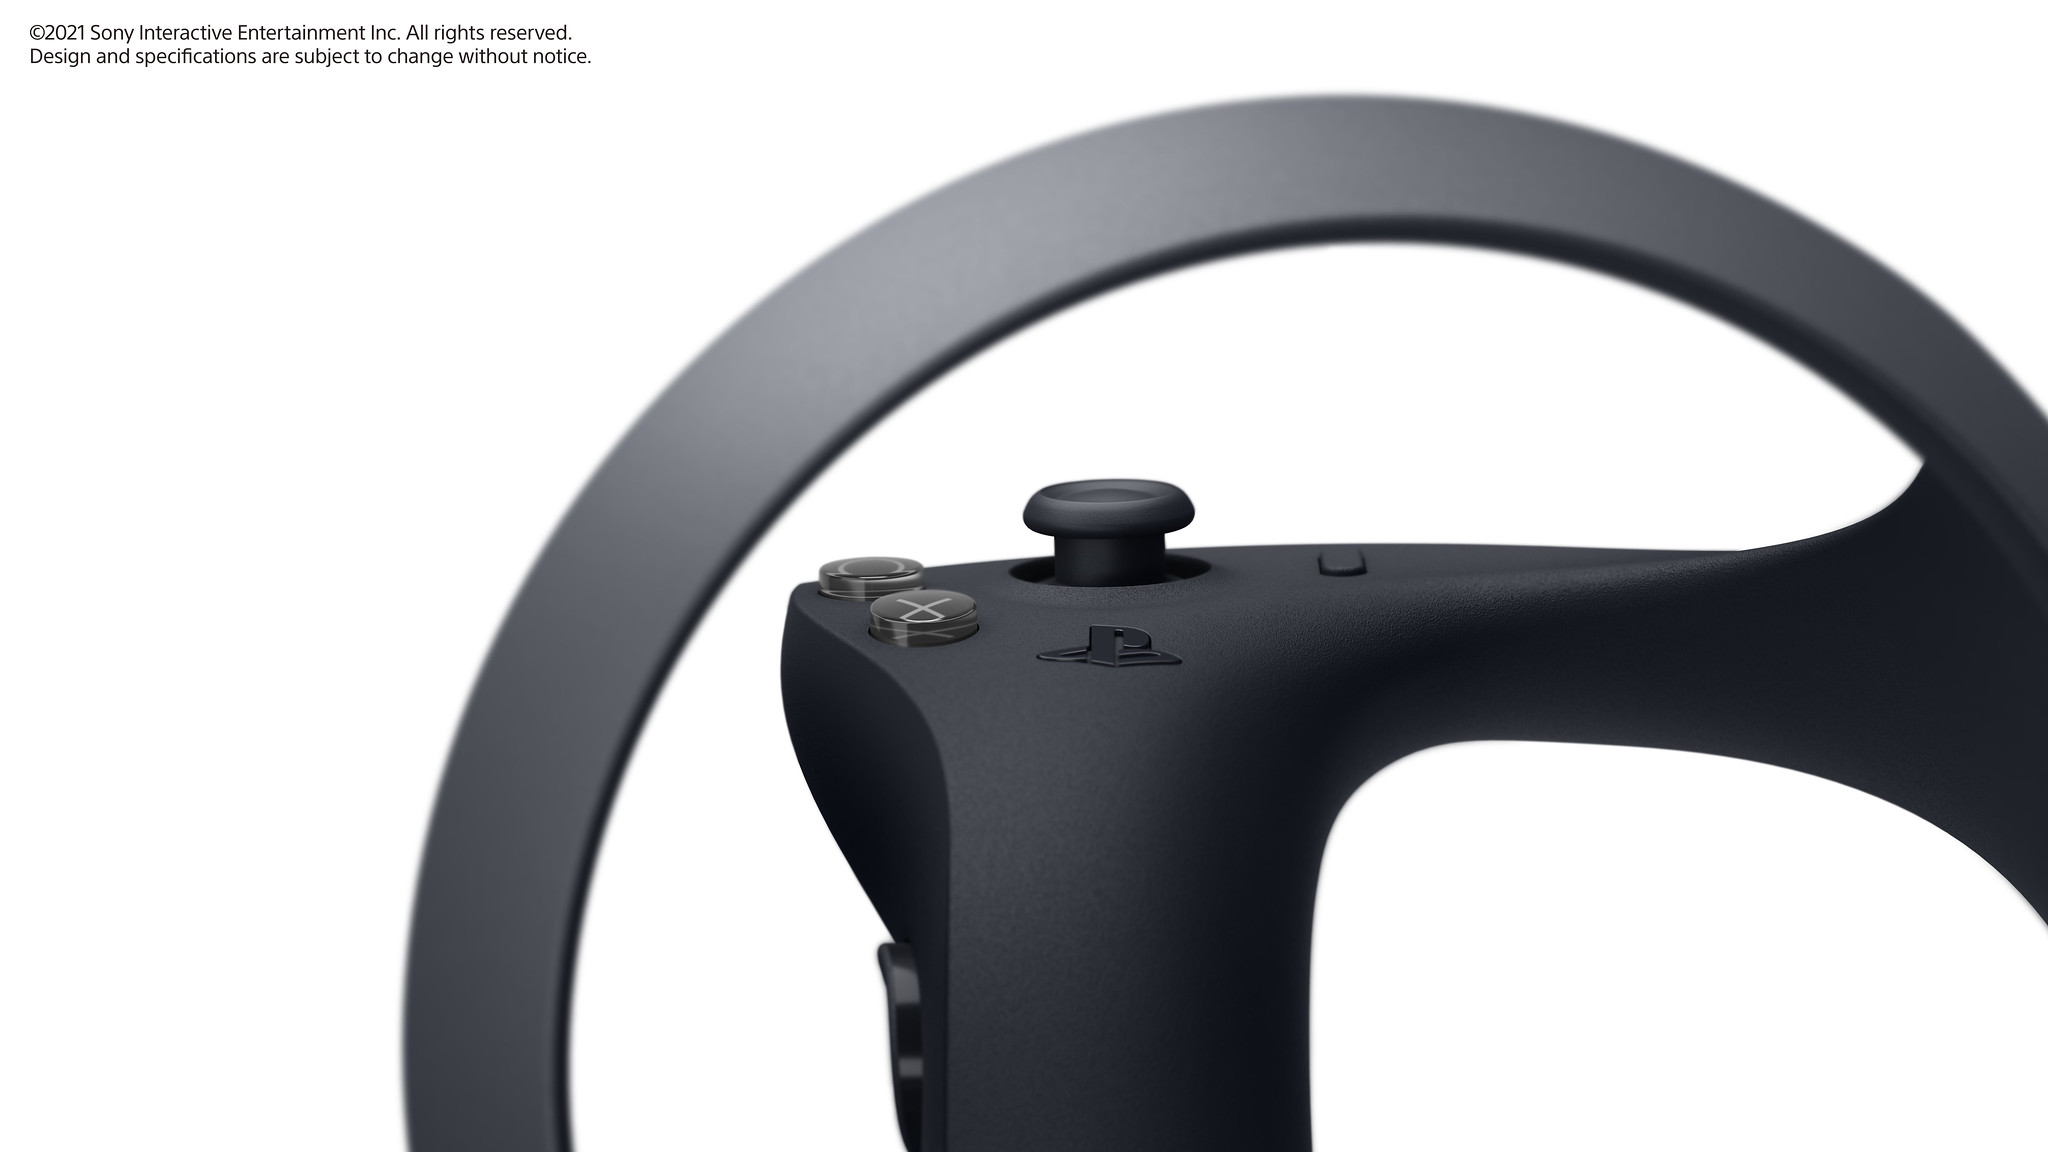 fremviser VR-controllere til PlayStation 5